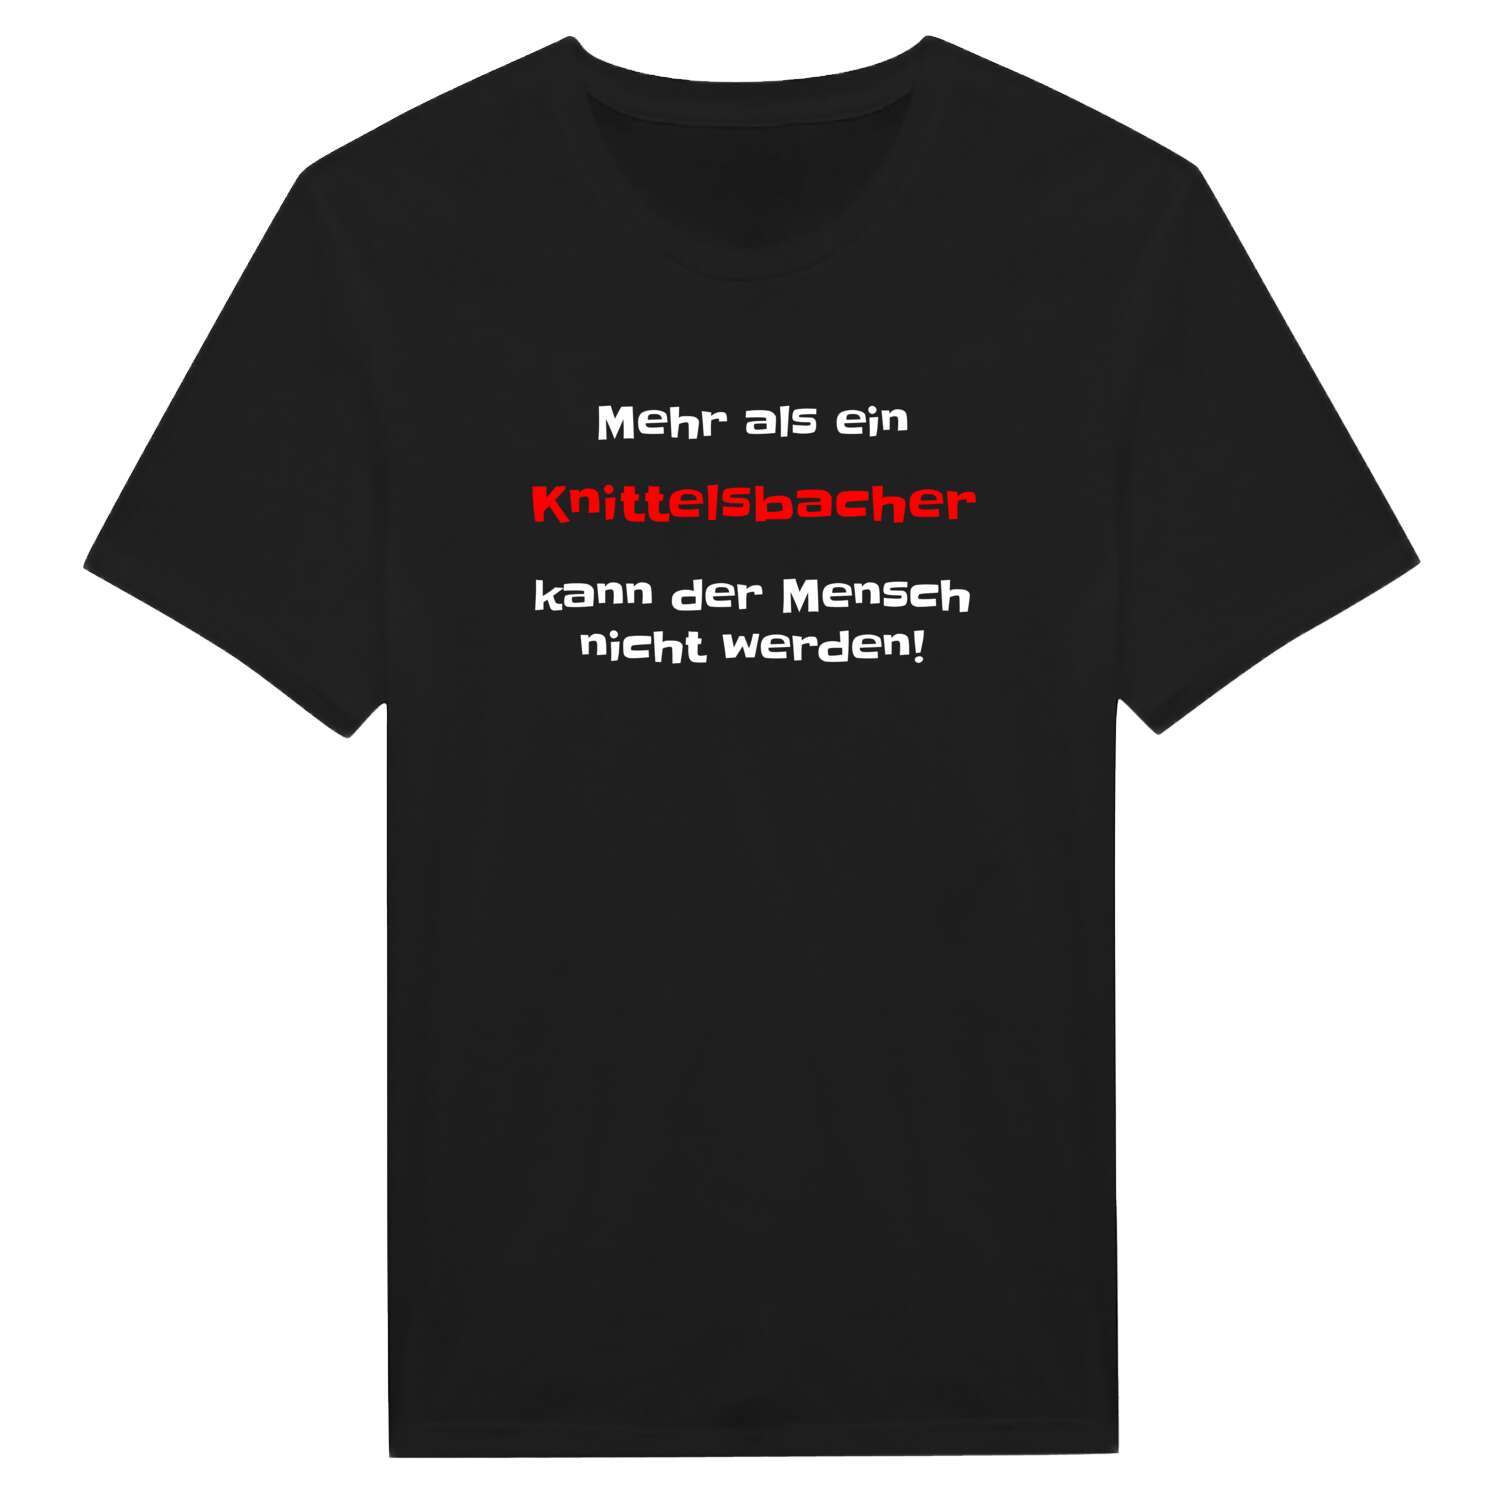 Knittelsbach T-Shirt »Mehr als ein«